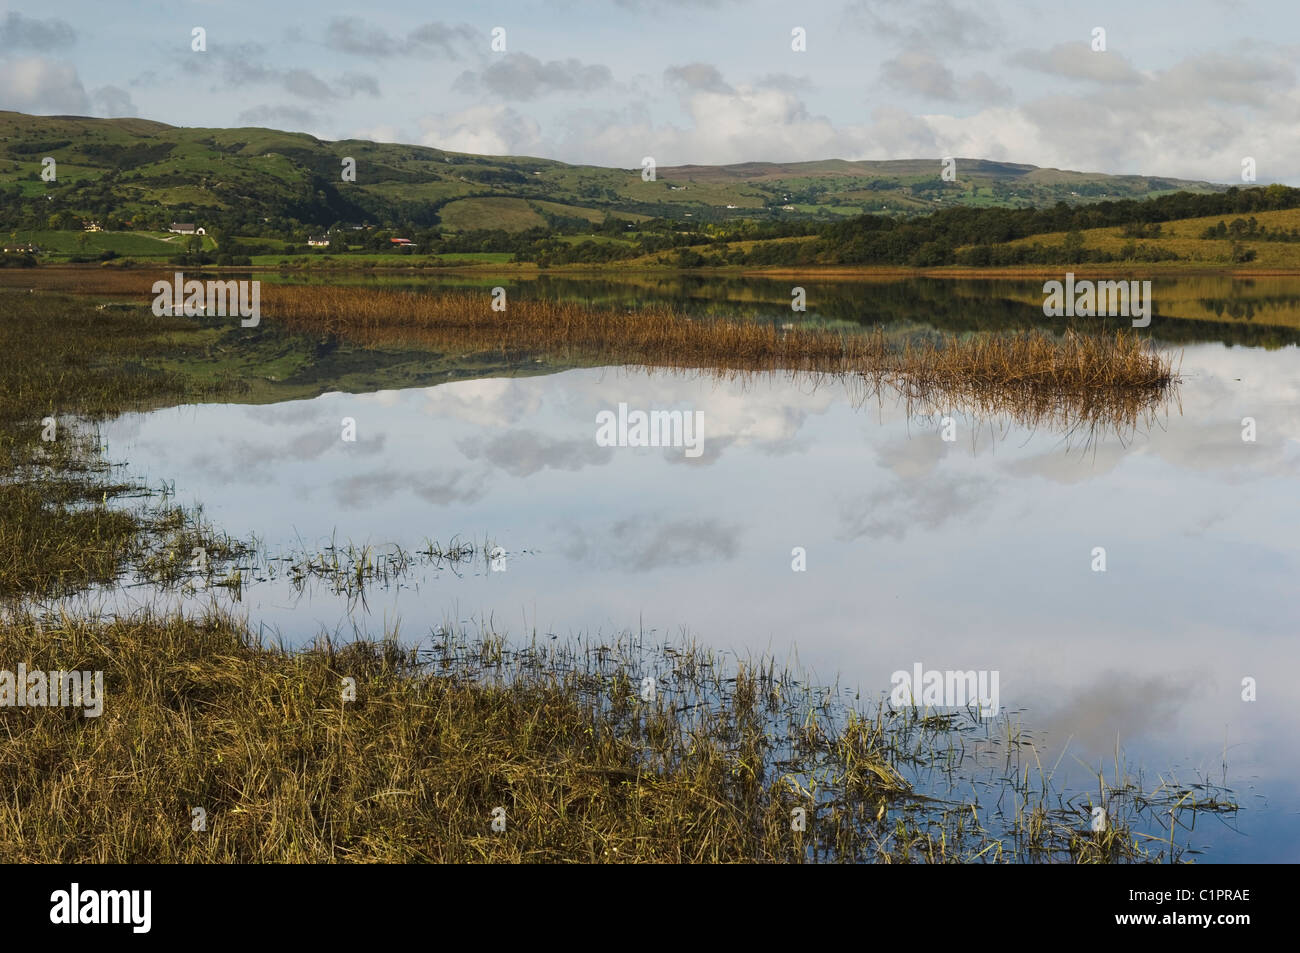 L'Irlande du Nord, Lower Lough Erne, Fermanagh Lakelands, Reed, lit, près d'Enniskillen Banque D'Images